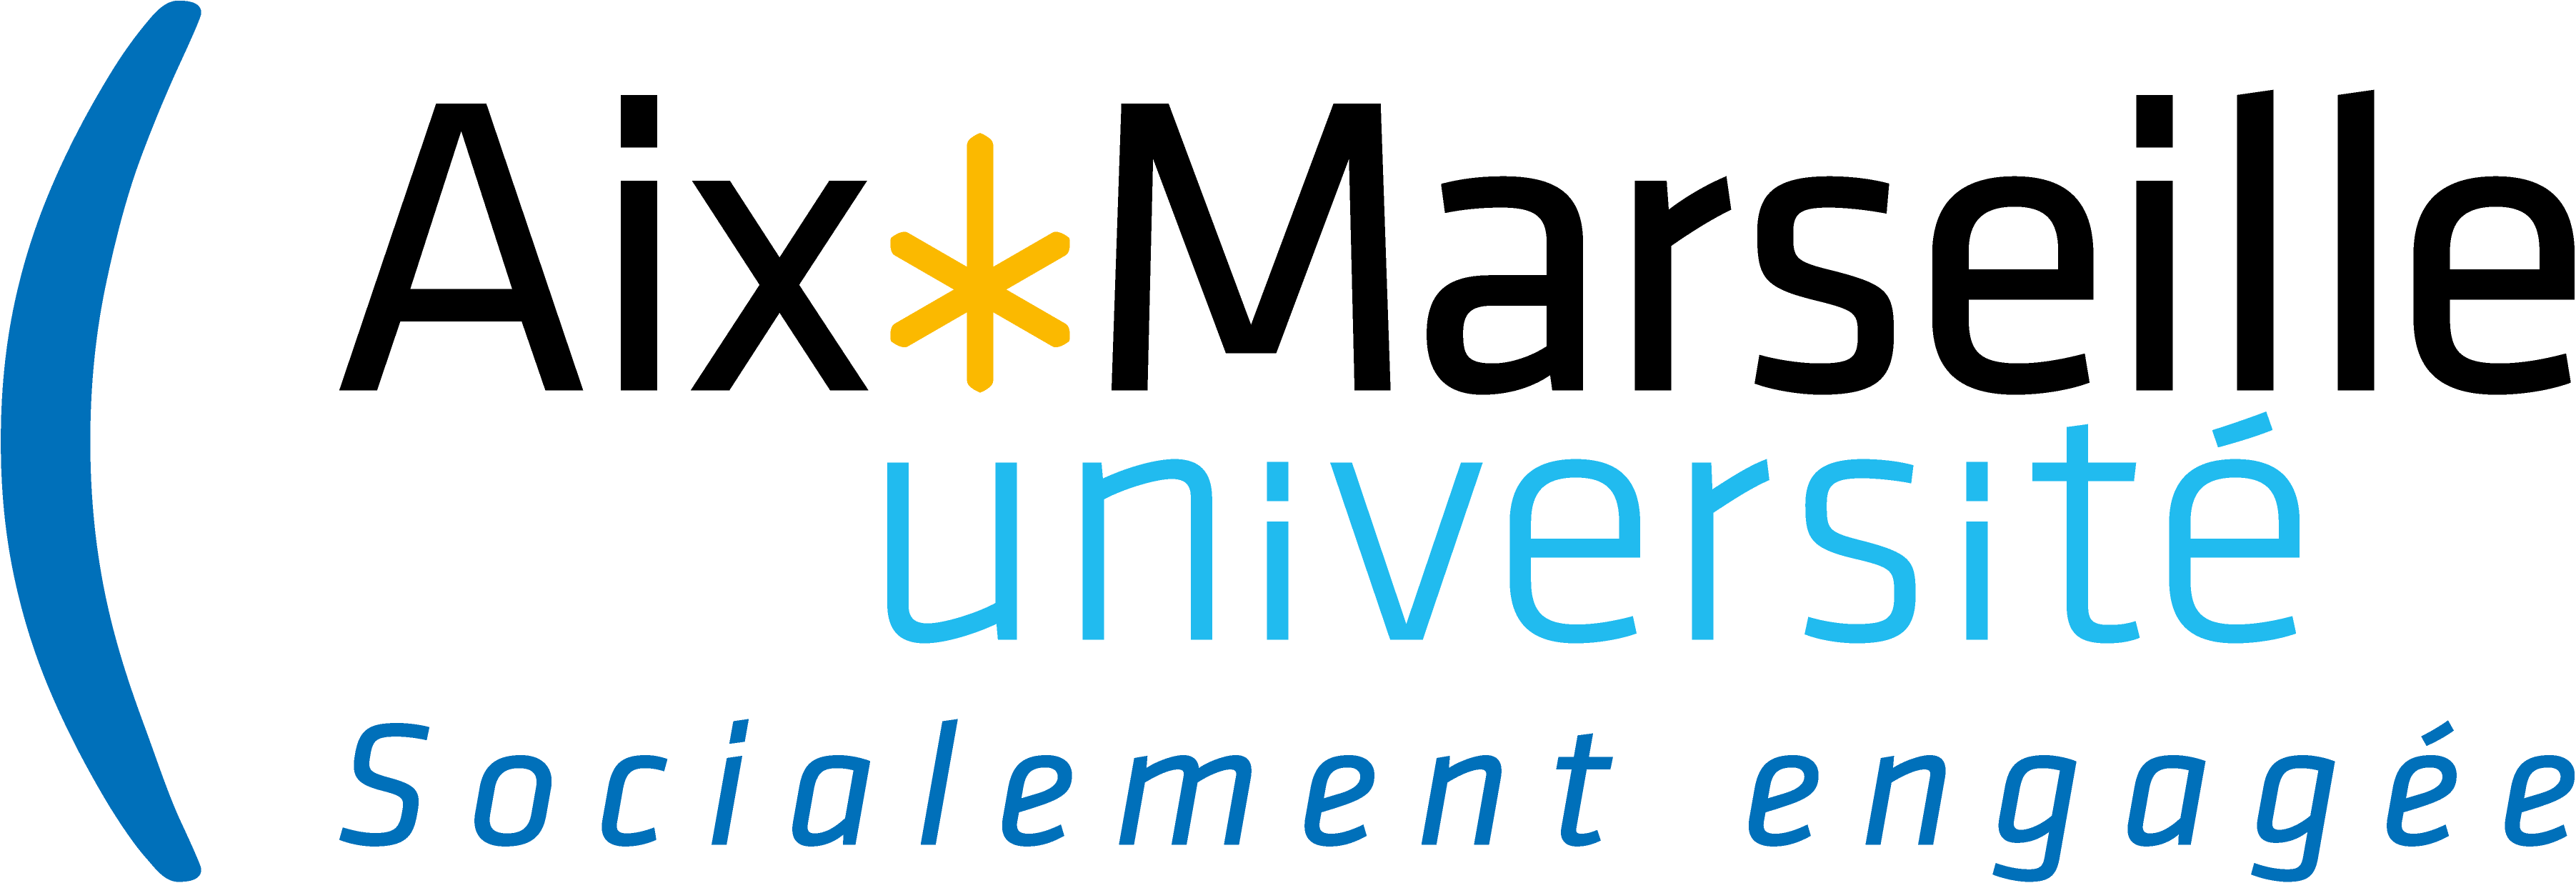 MAU université aix marseille logo